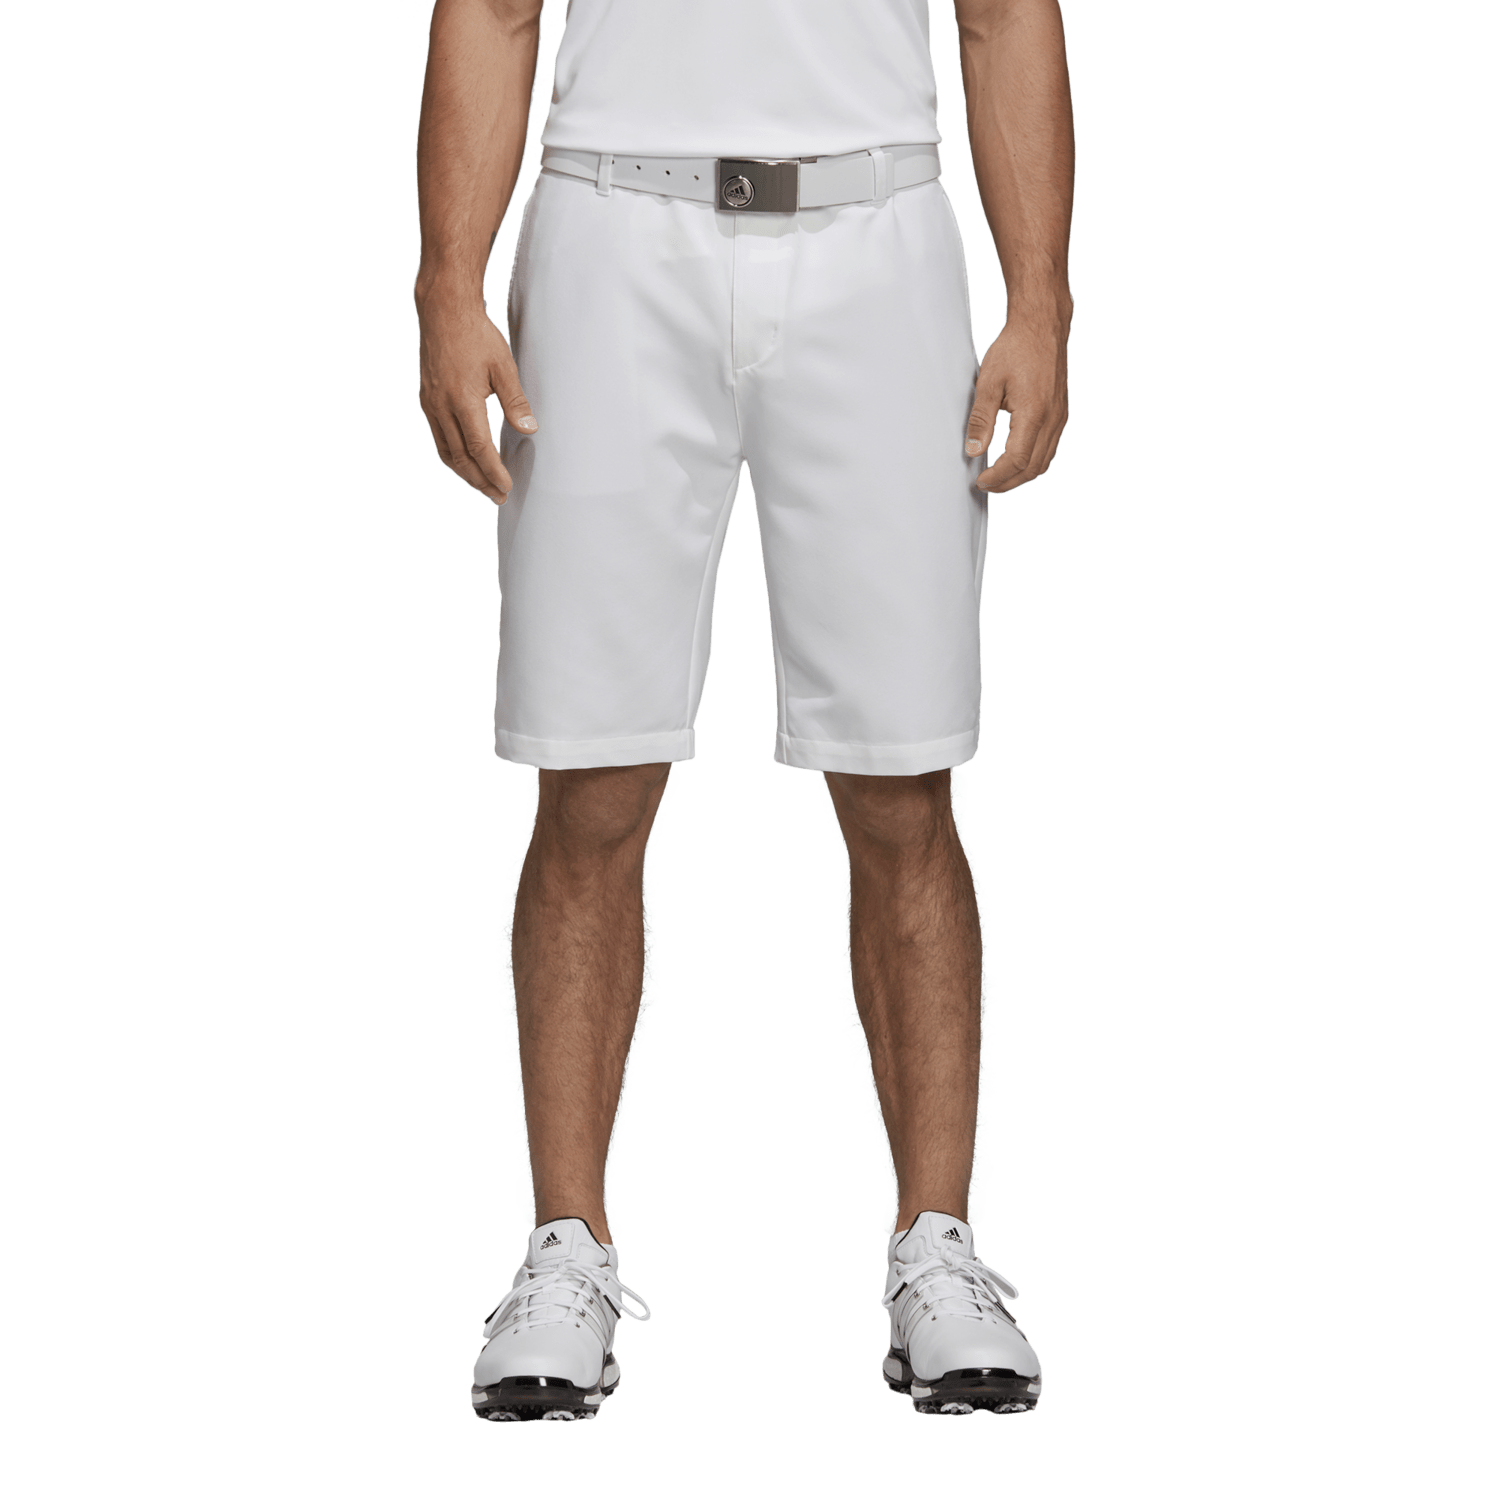 adidas 365 3 stripe golf shorts